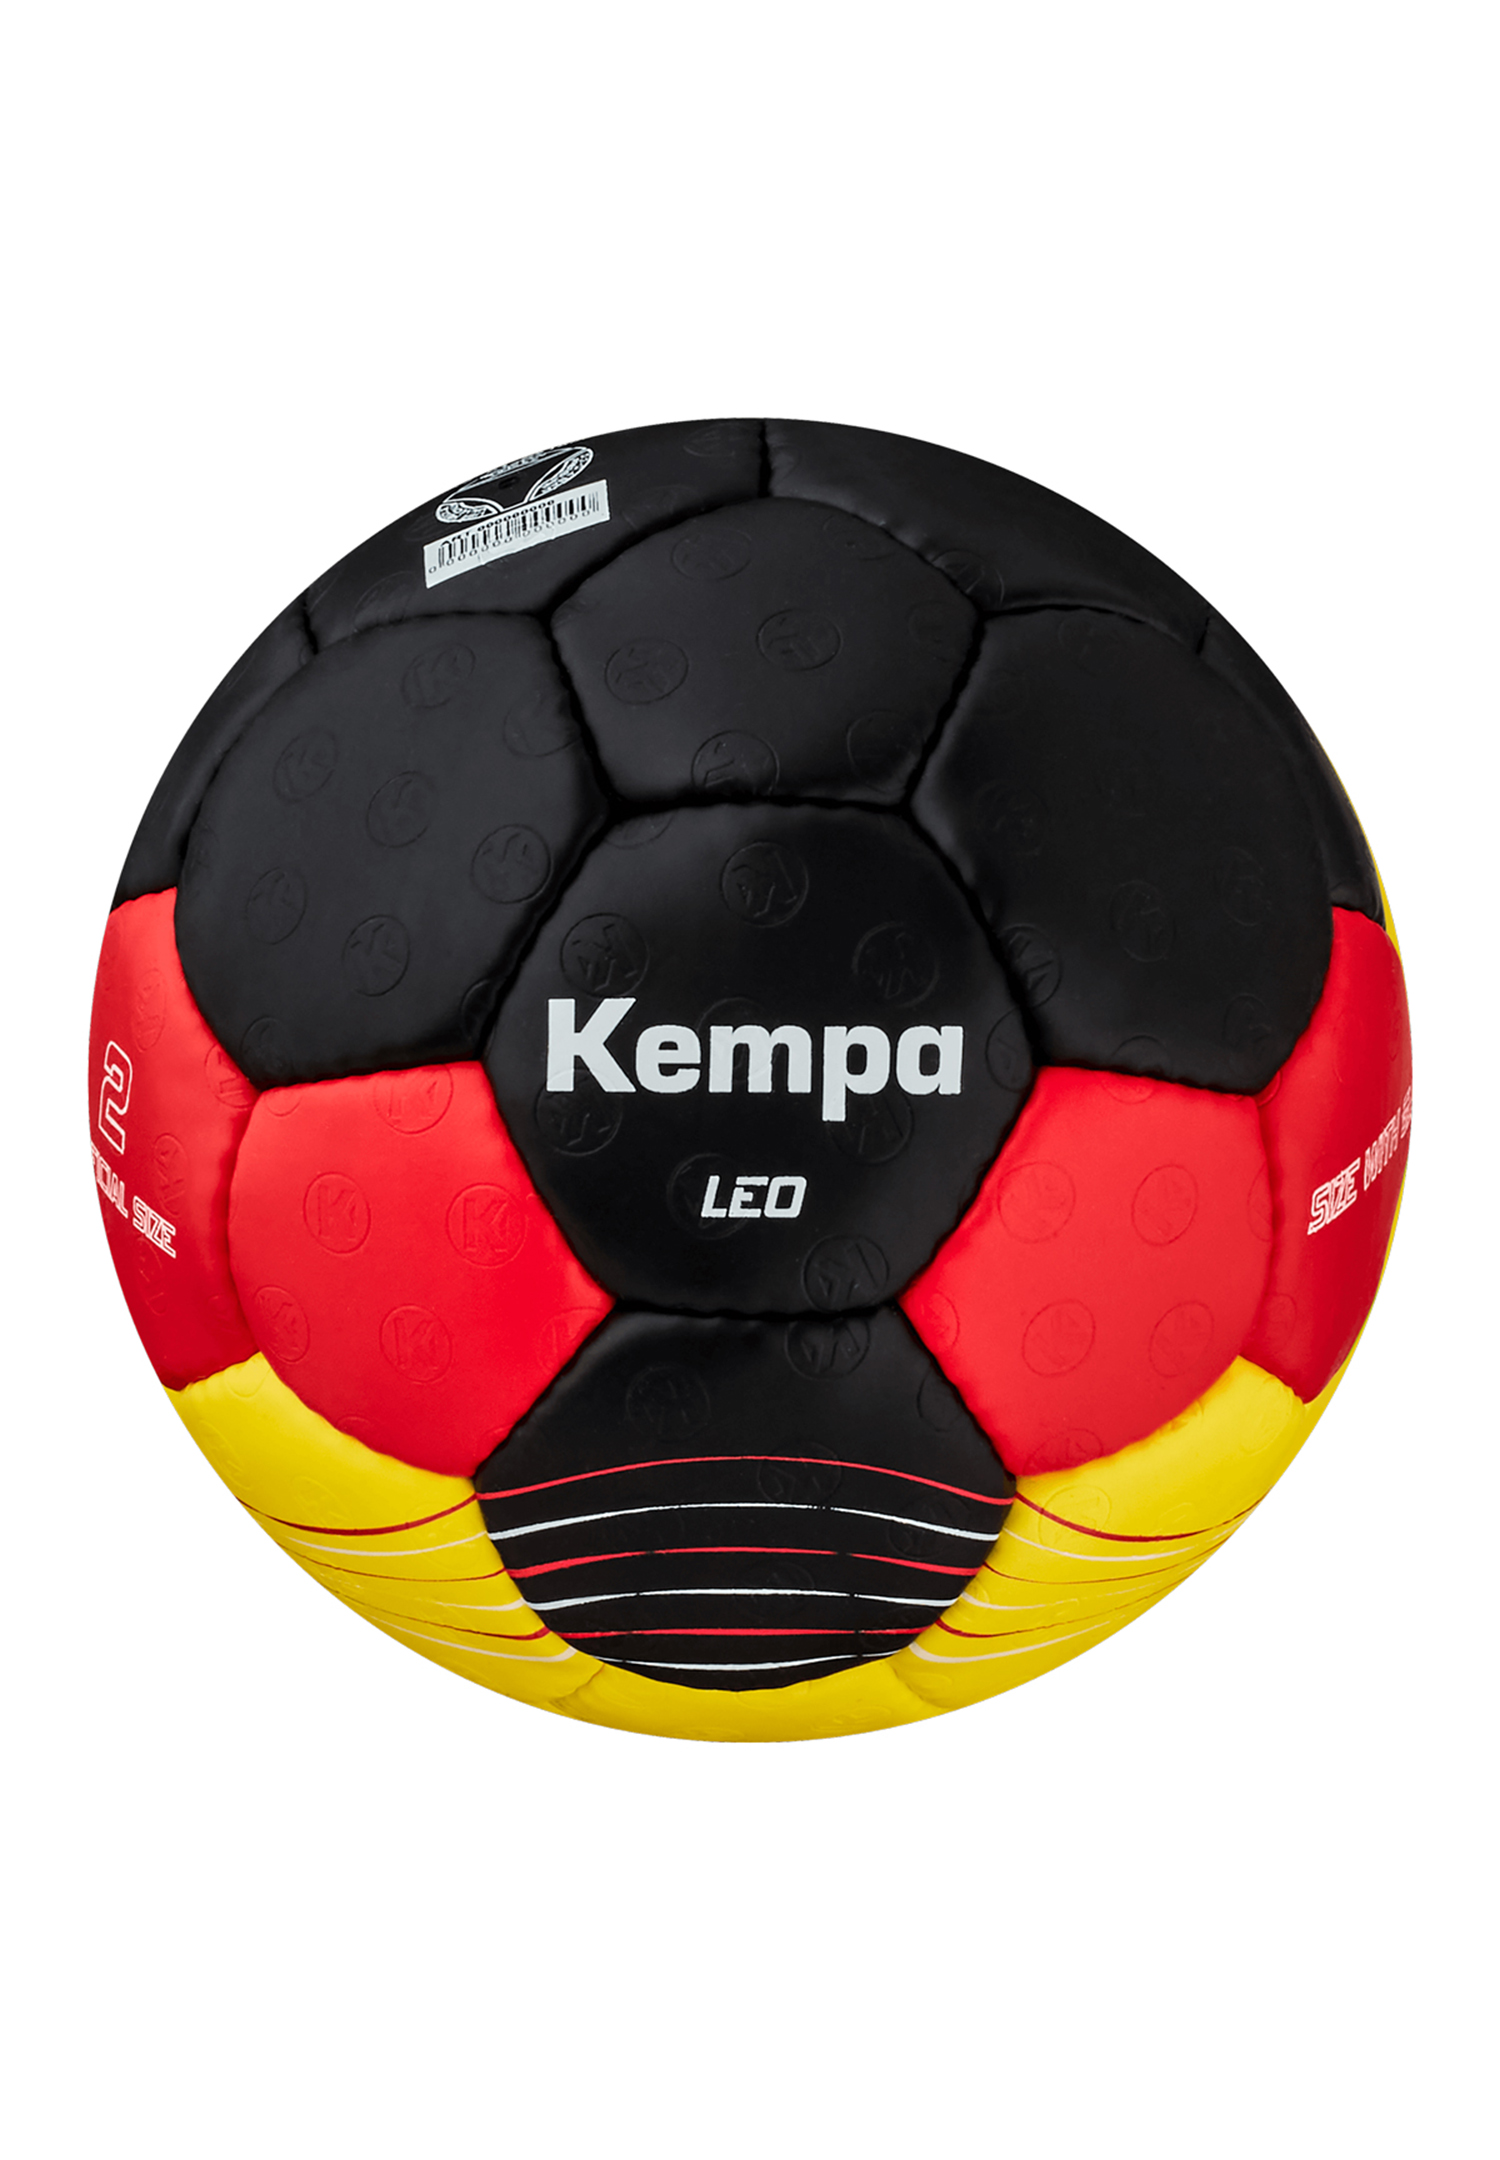 Kempa Handball Leo Team Germany Size 2 200191601 schwarz/rot/gold